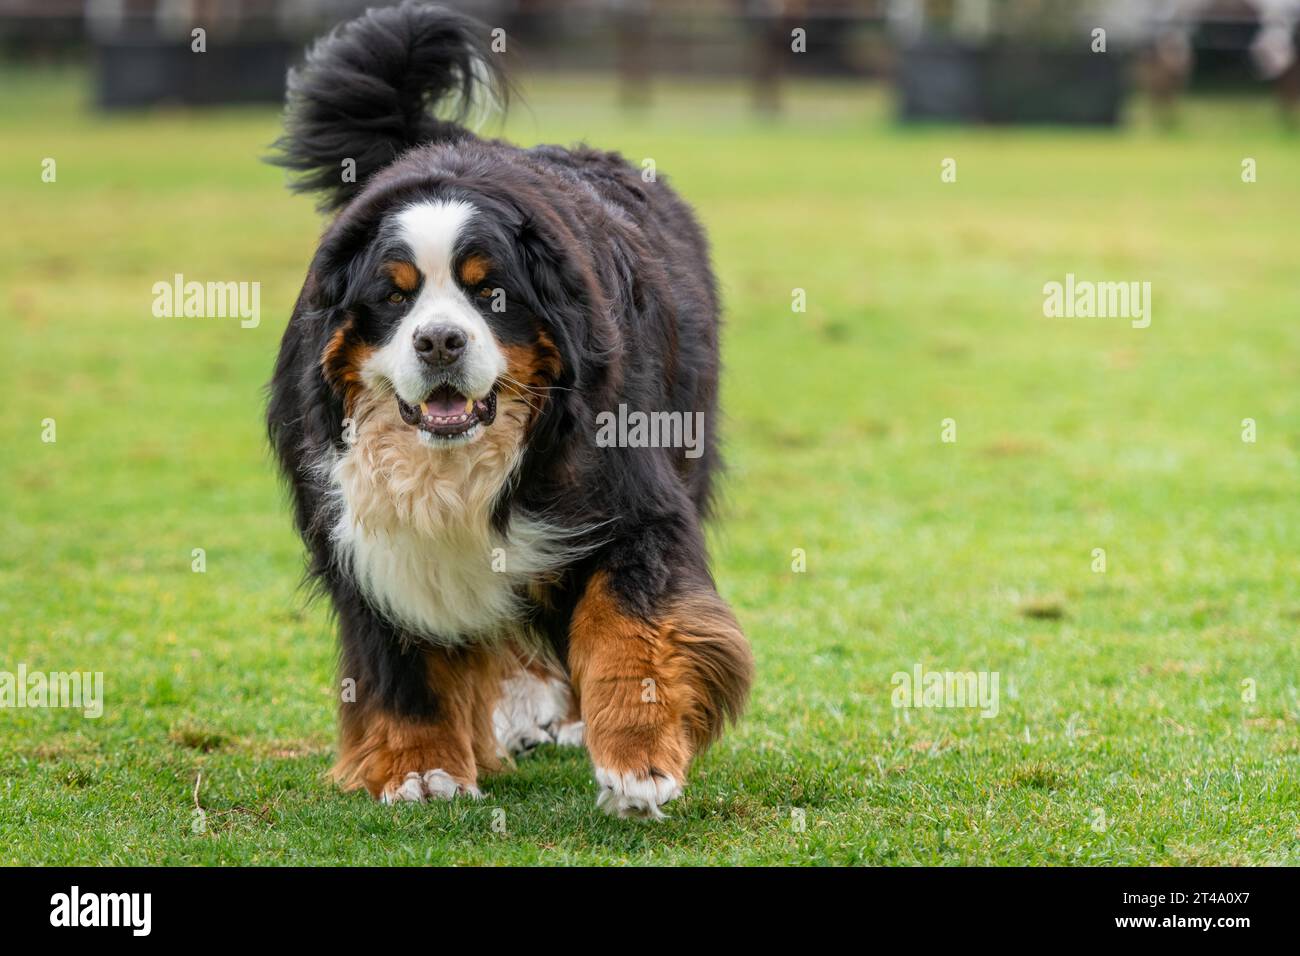 Retrato de un perro de montaña bernés corriendo en el parque de perros. Perro gordo grande en el parque. Foto de stock